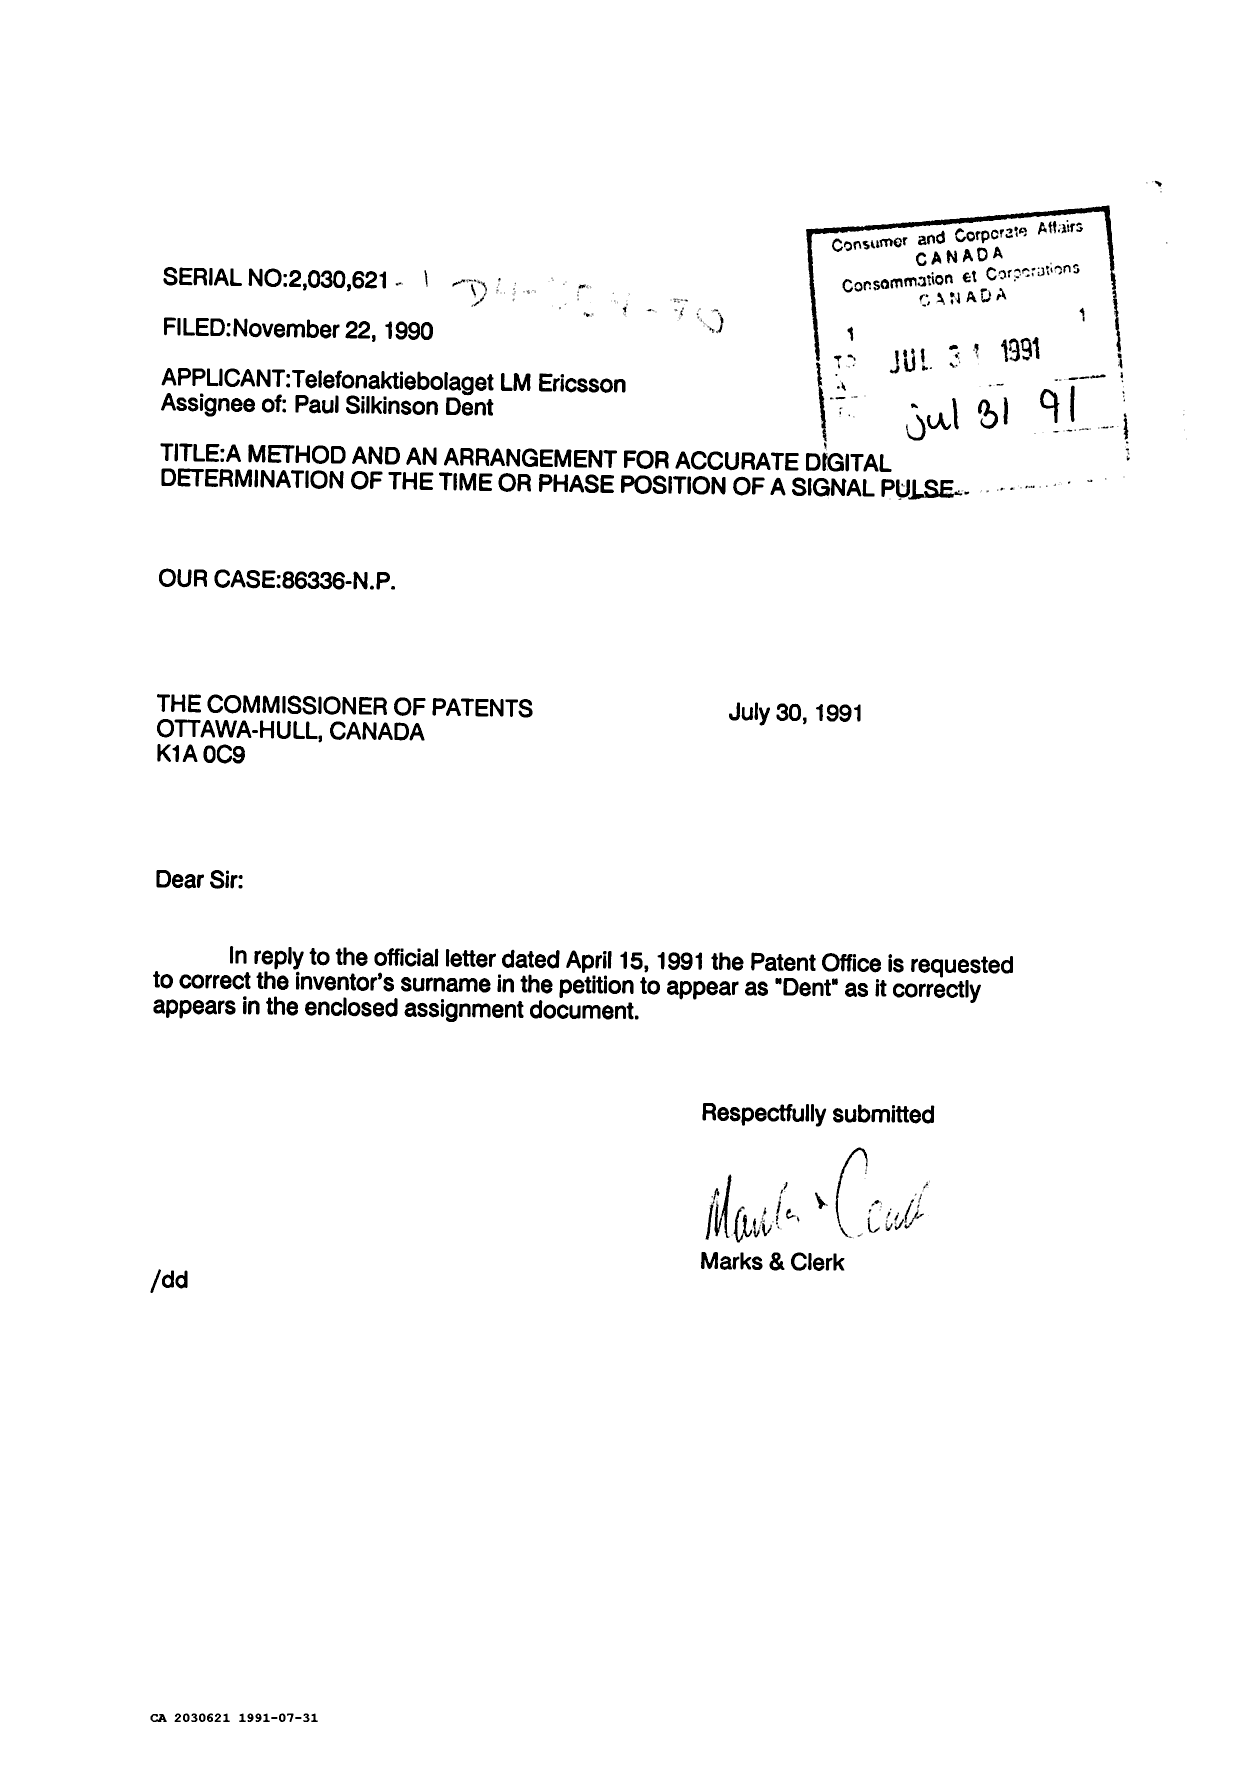 Document de brevet canadien 2030621. Correspondance reliée au PCT 19910731. Image 1 de 1